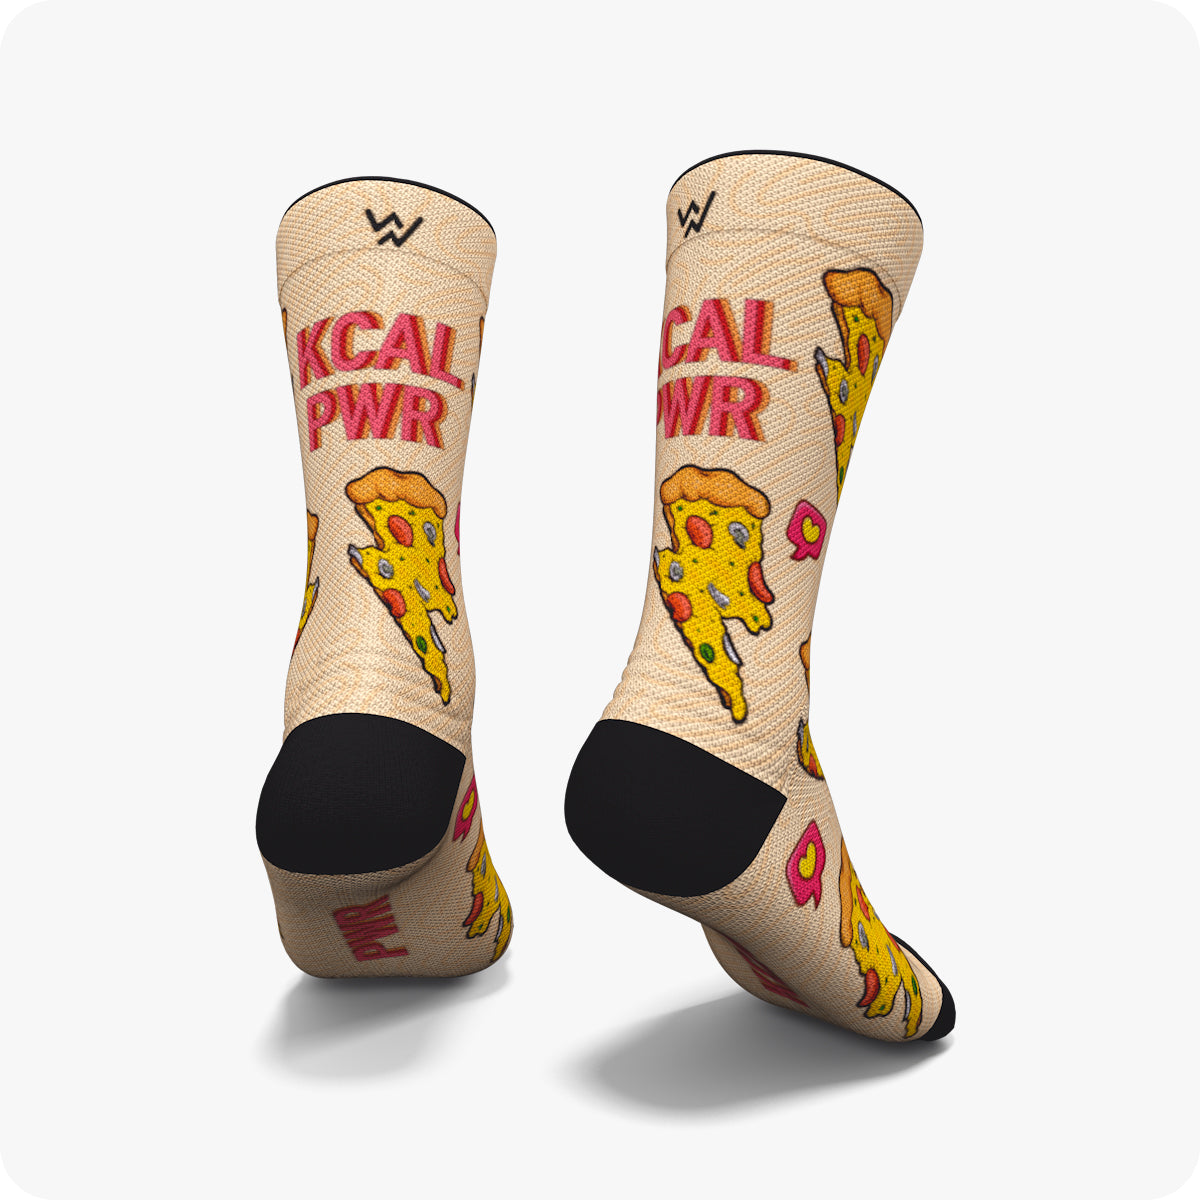  Calcetines de pizza/comida de dibujos animados calcetines hip  hop calcetines divertidos de los hombres calcetines unisex calcetines :  Deportes y Actividades al Aire Libre